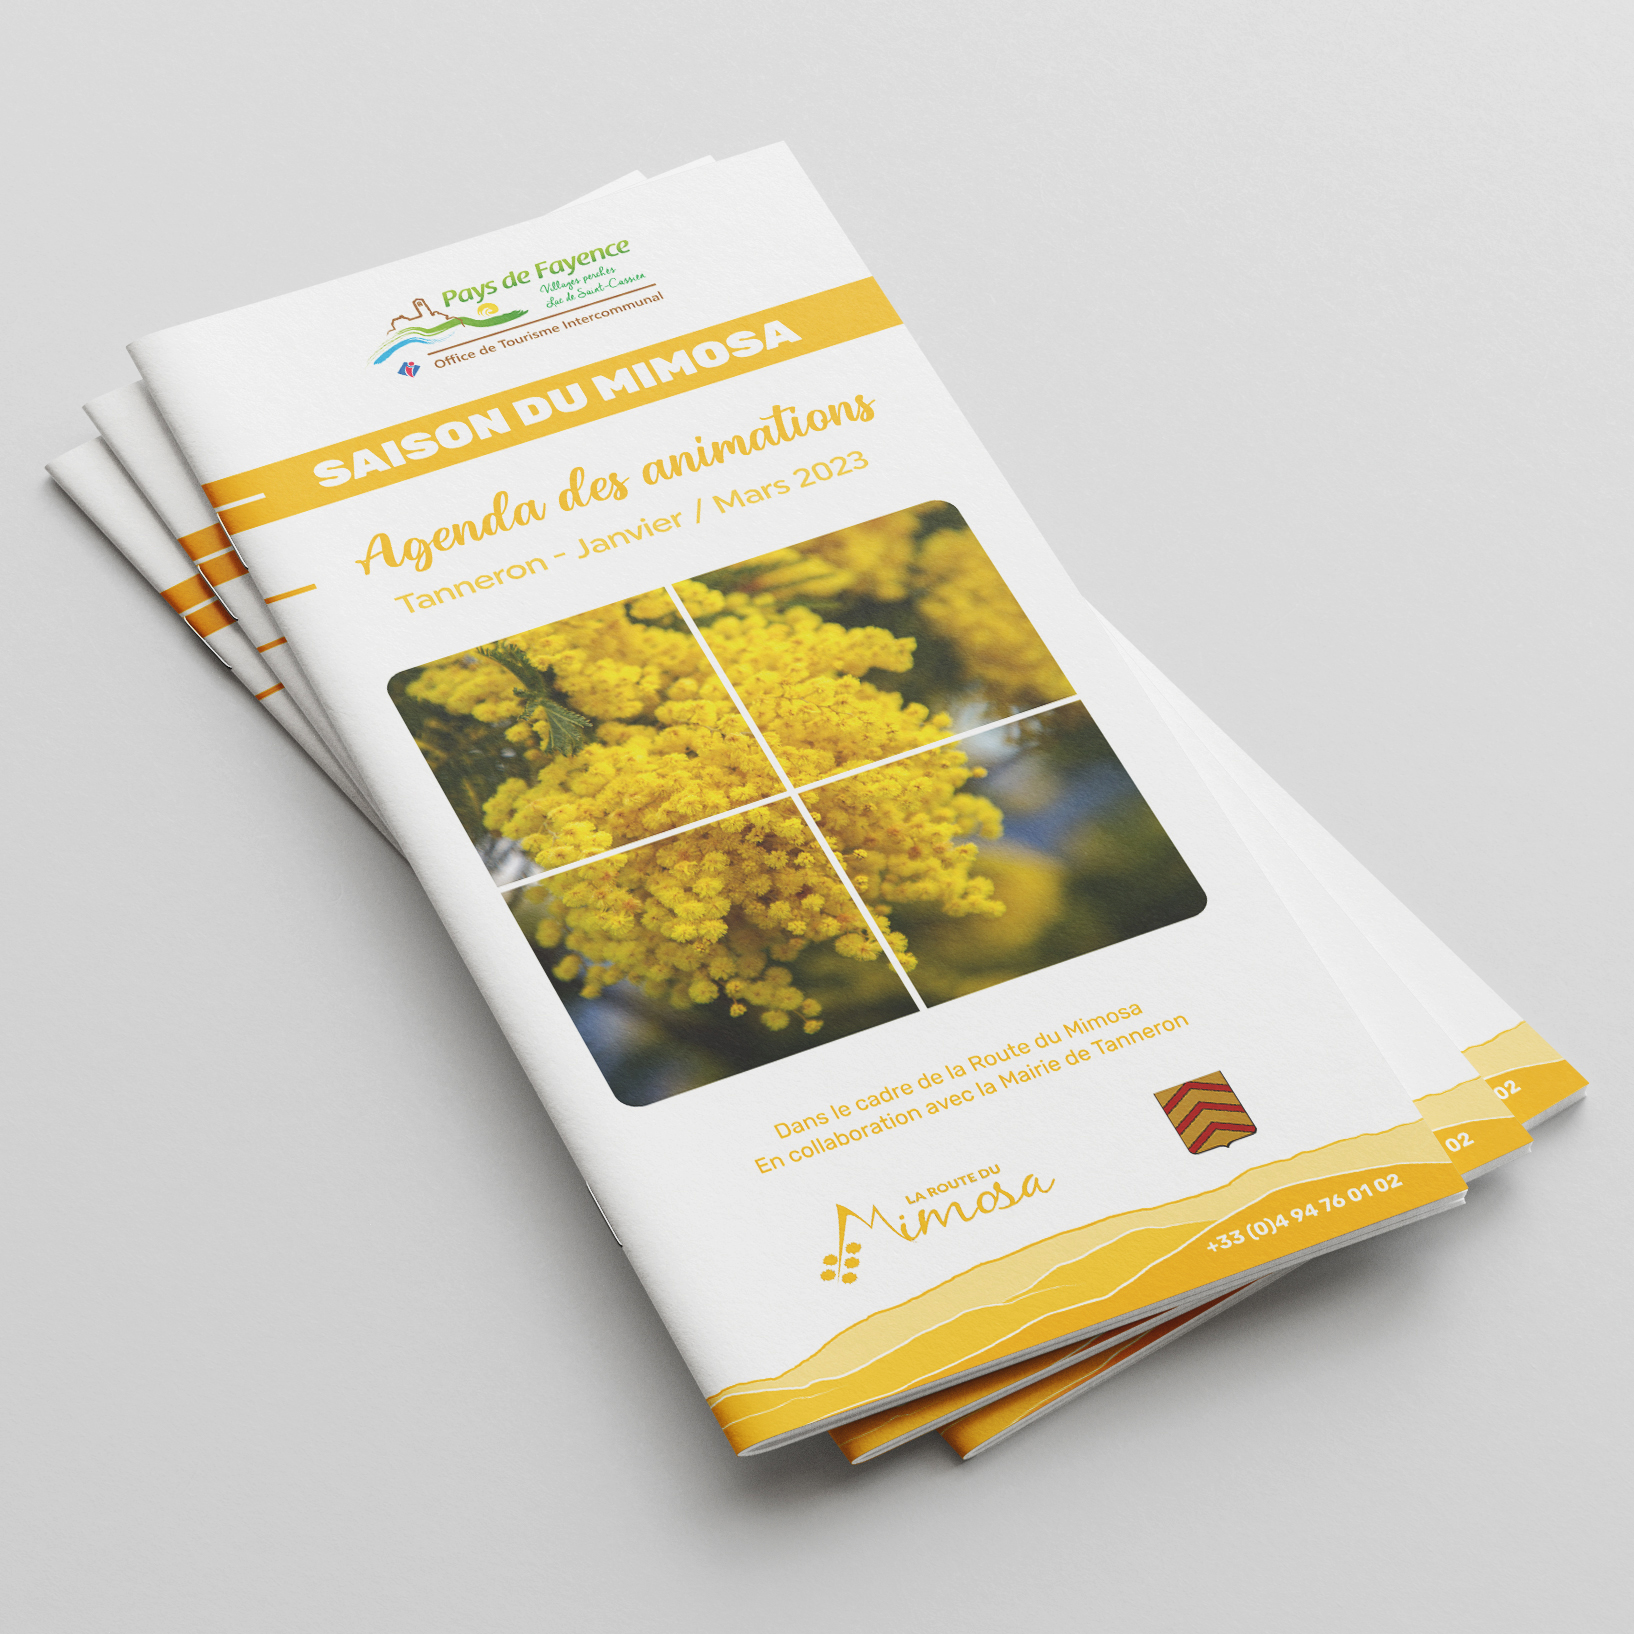 Brochure Animations Mimosa 2023 pour l'Office de Tourisme Intercommunal du Pays de Fayence